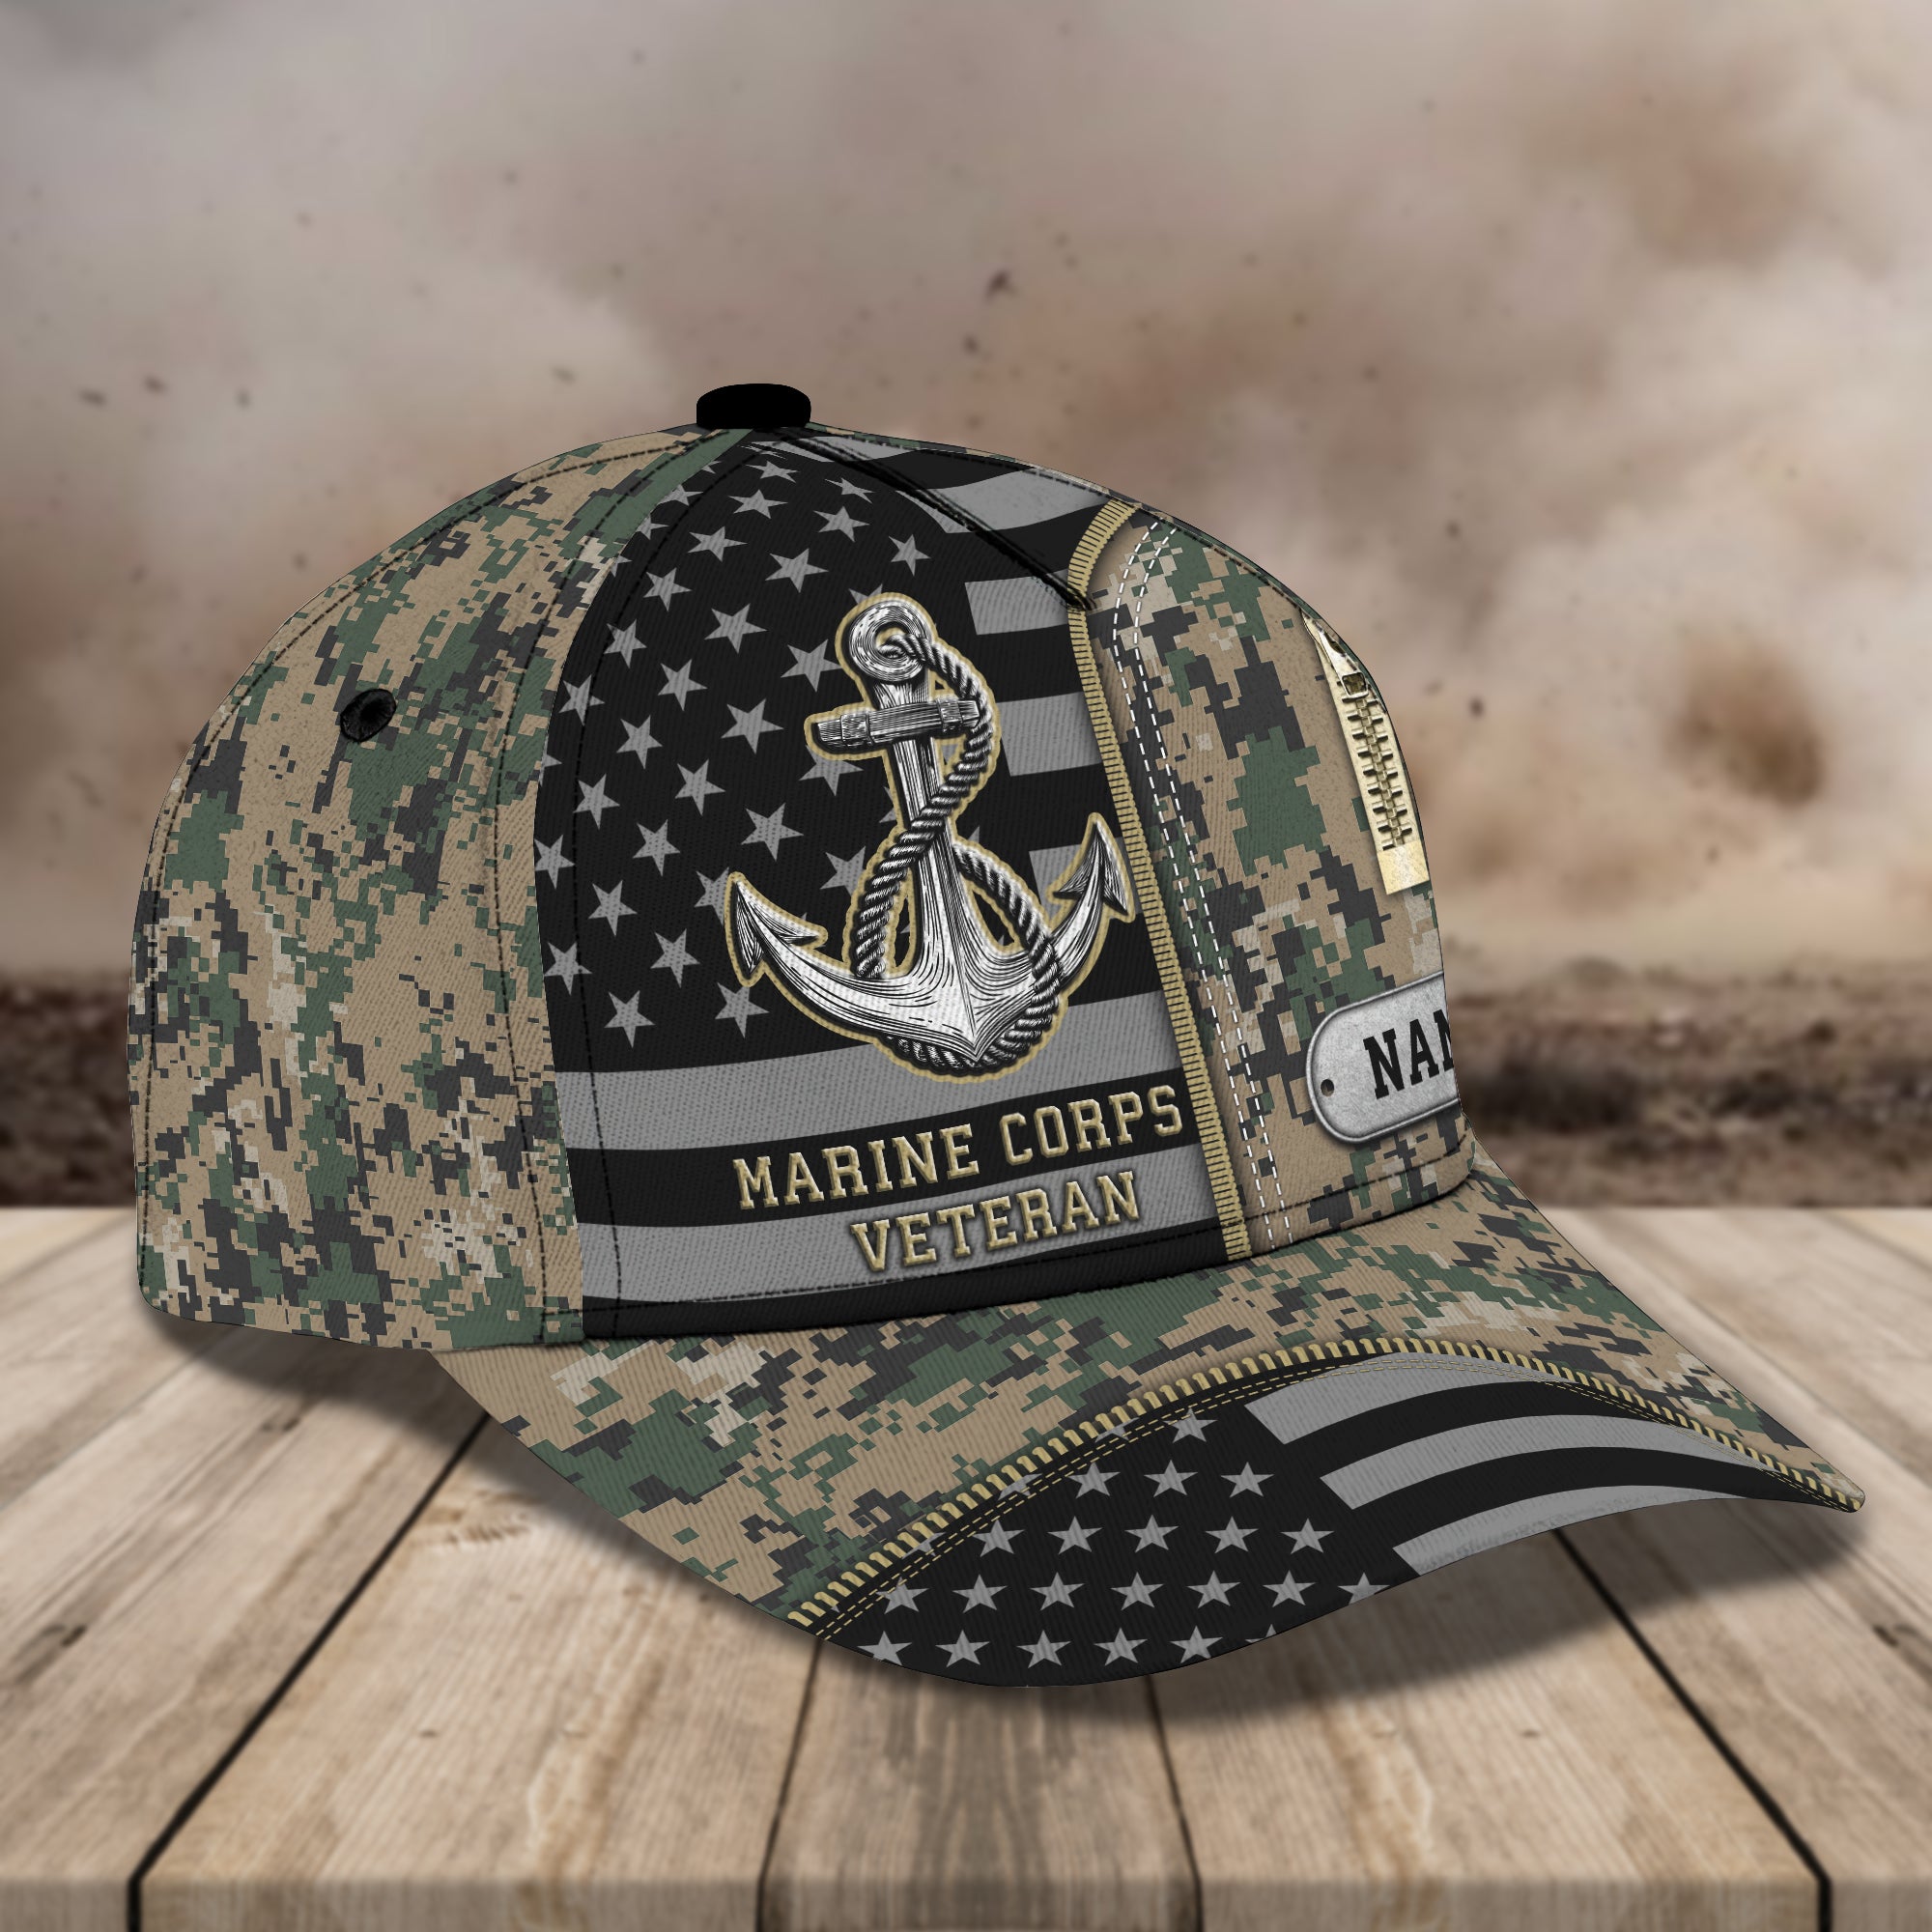 Marine Corps Veterans Cap -Loop- Personalized Name Cap - H9h3-320